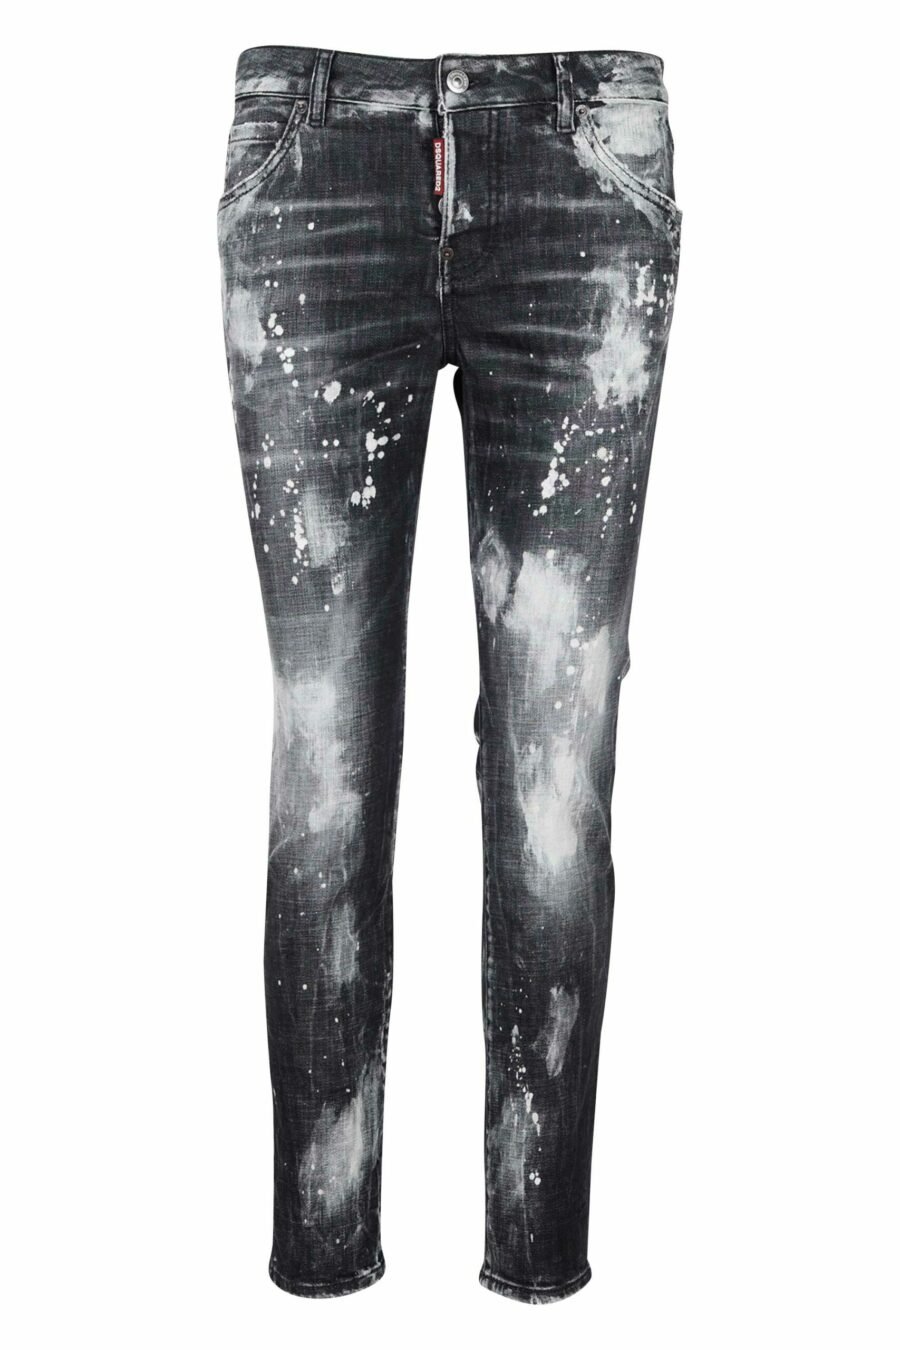 Pantalon en jean "cool girl jean" noir usé par endroits - 8054148118112 scaled